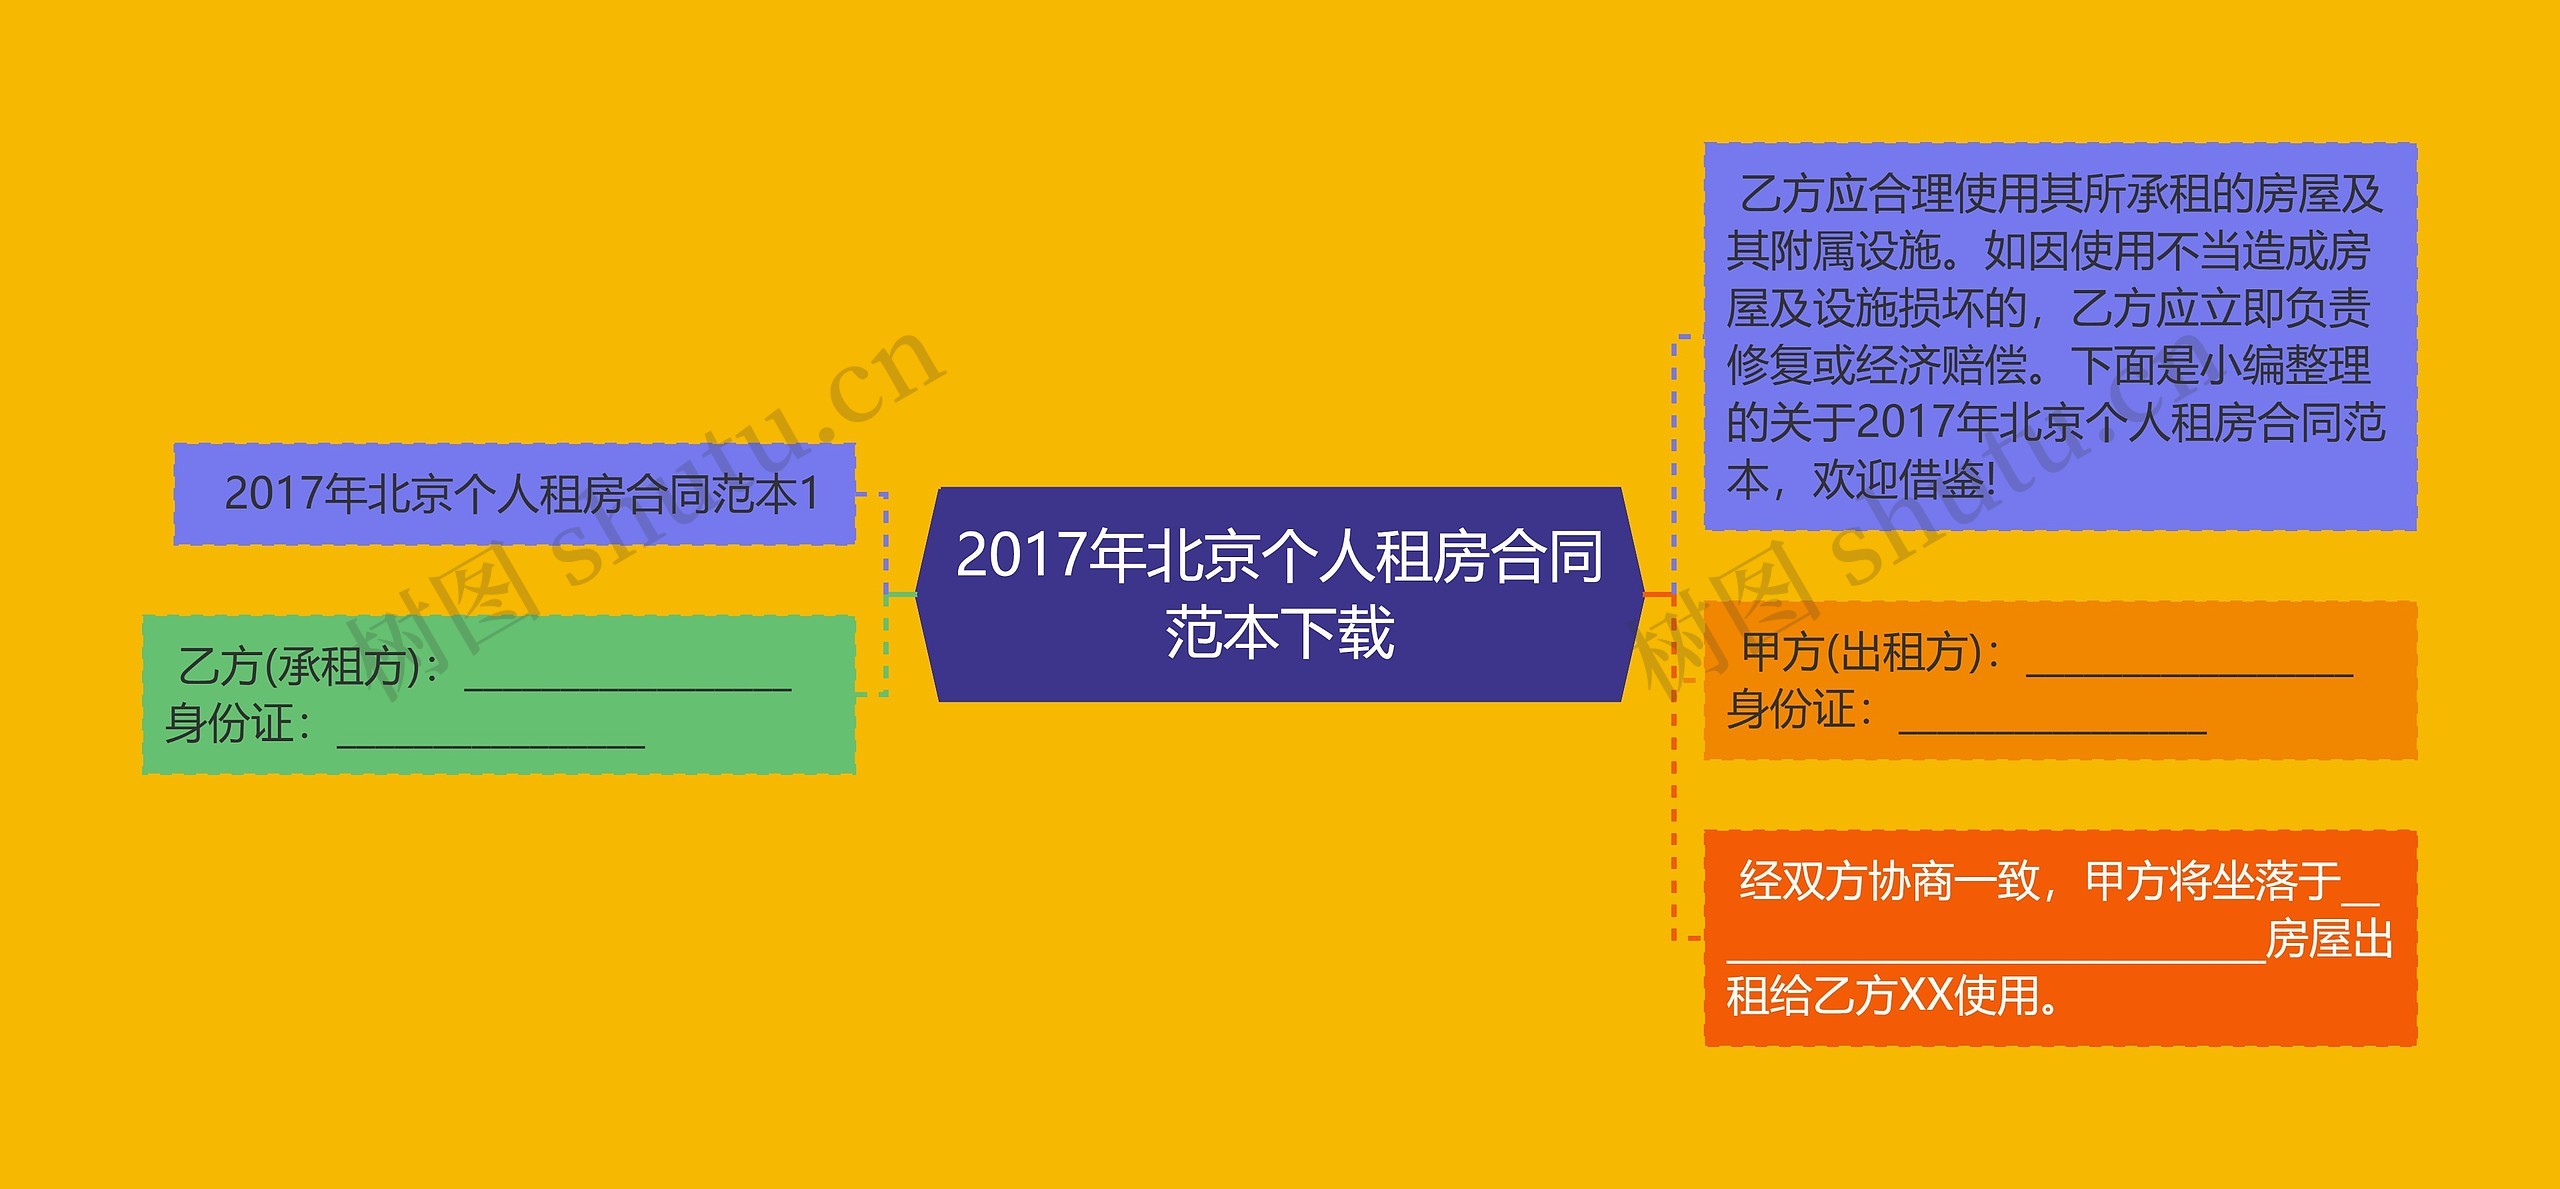 2017年北京个人租房合同范本下载